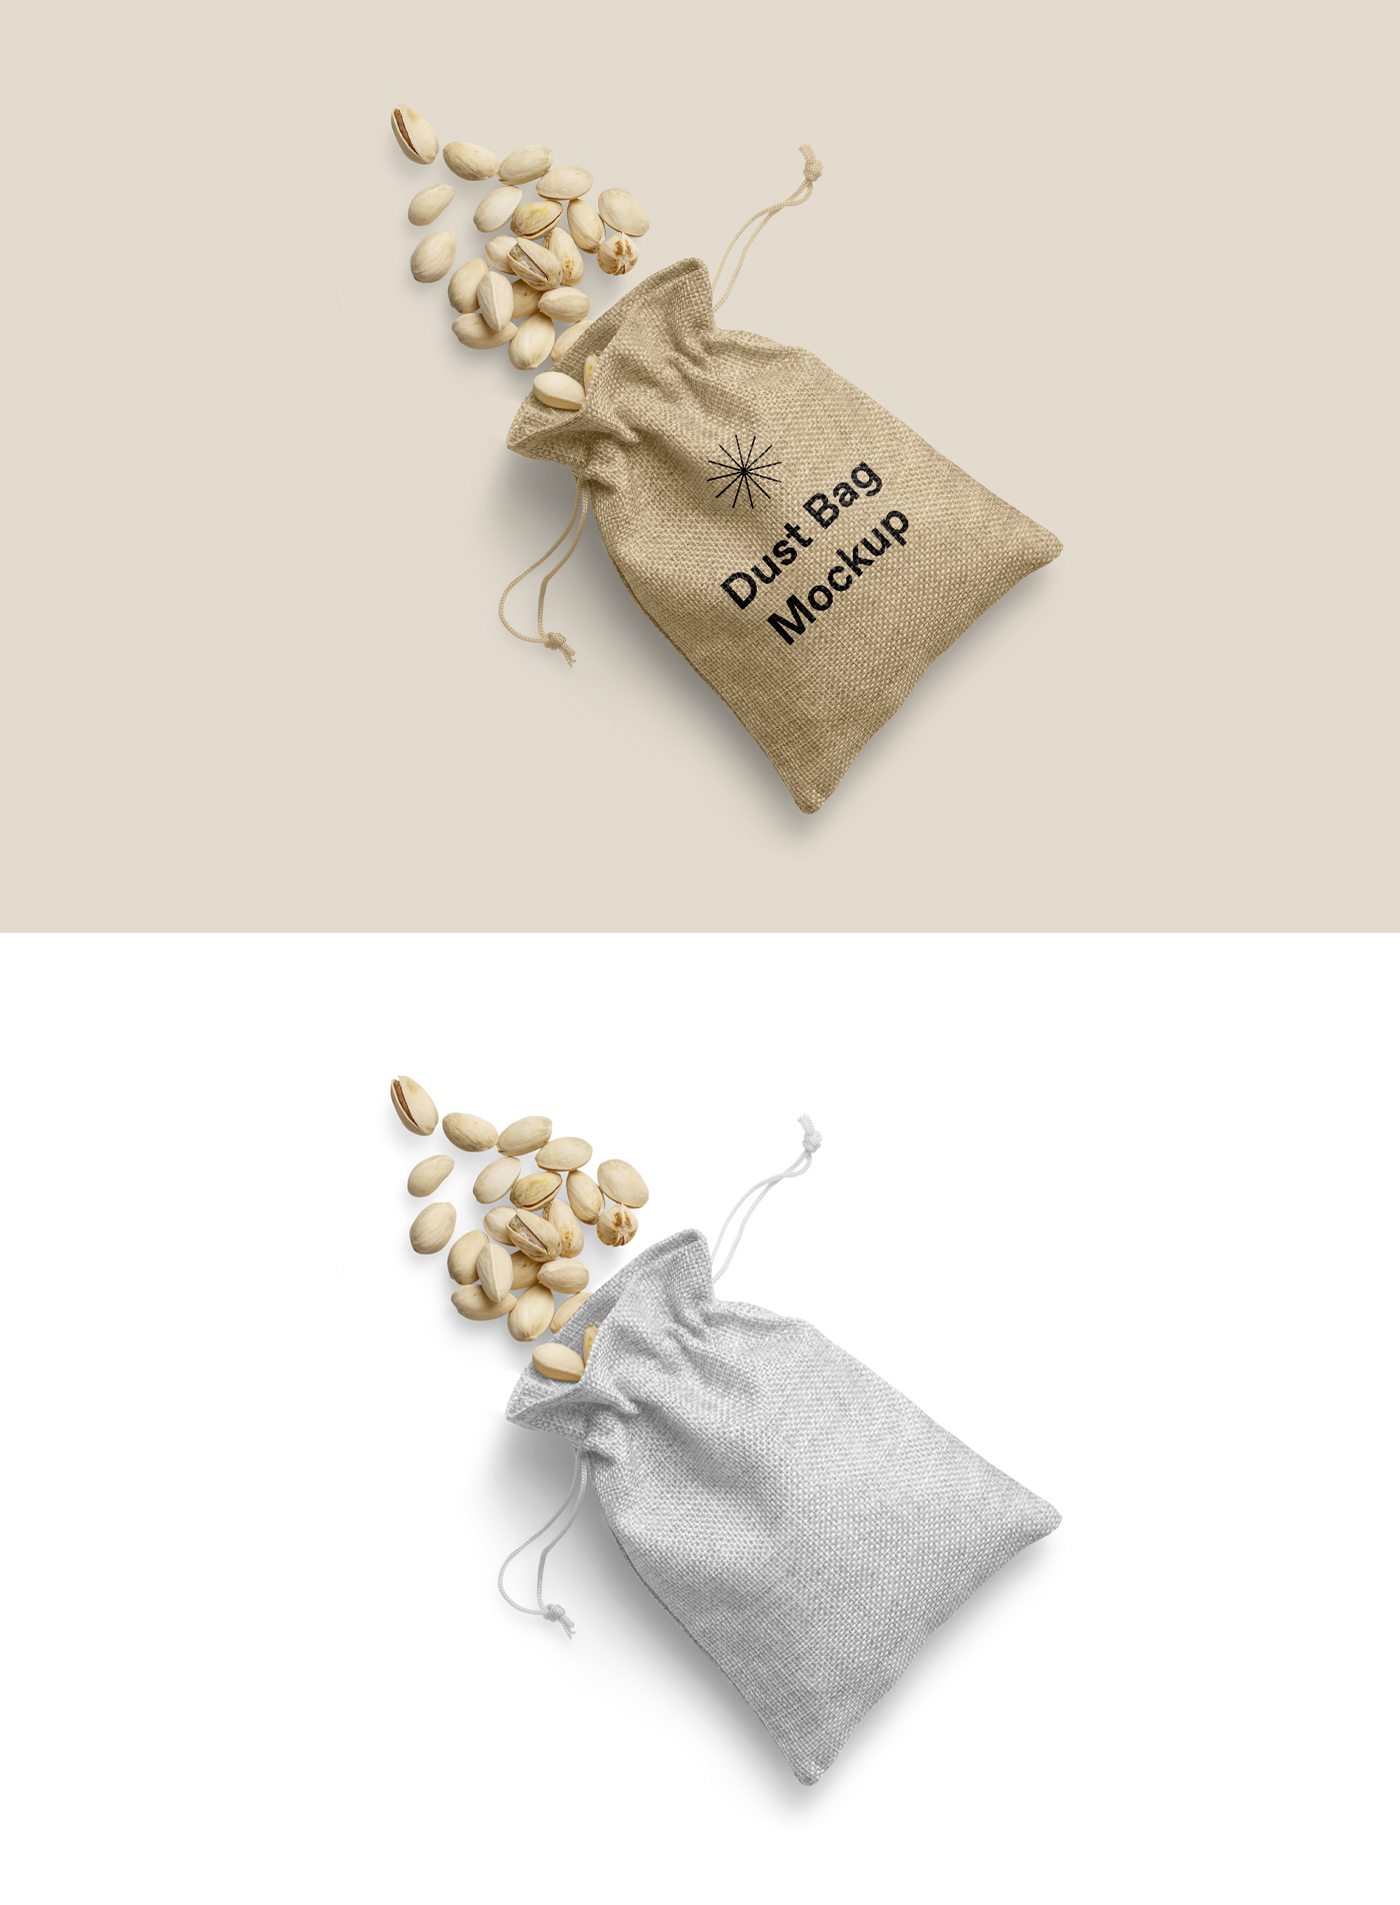 417 可商用麻布袋坚果包装设计PSD样机素材 Dust Bag Mockup Design yythkg.zip